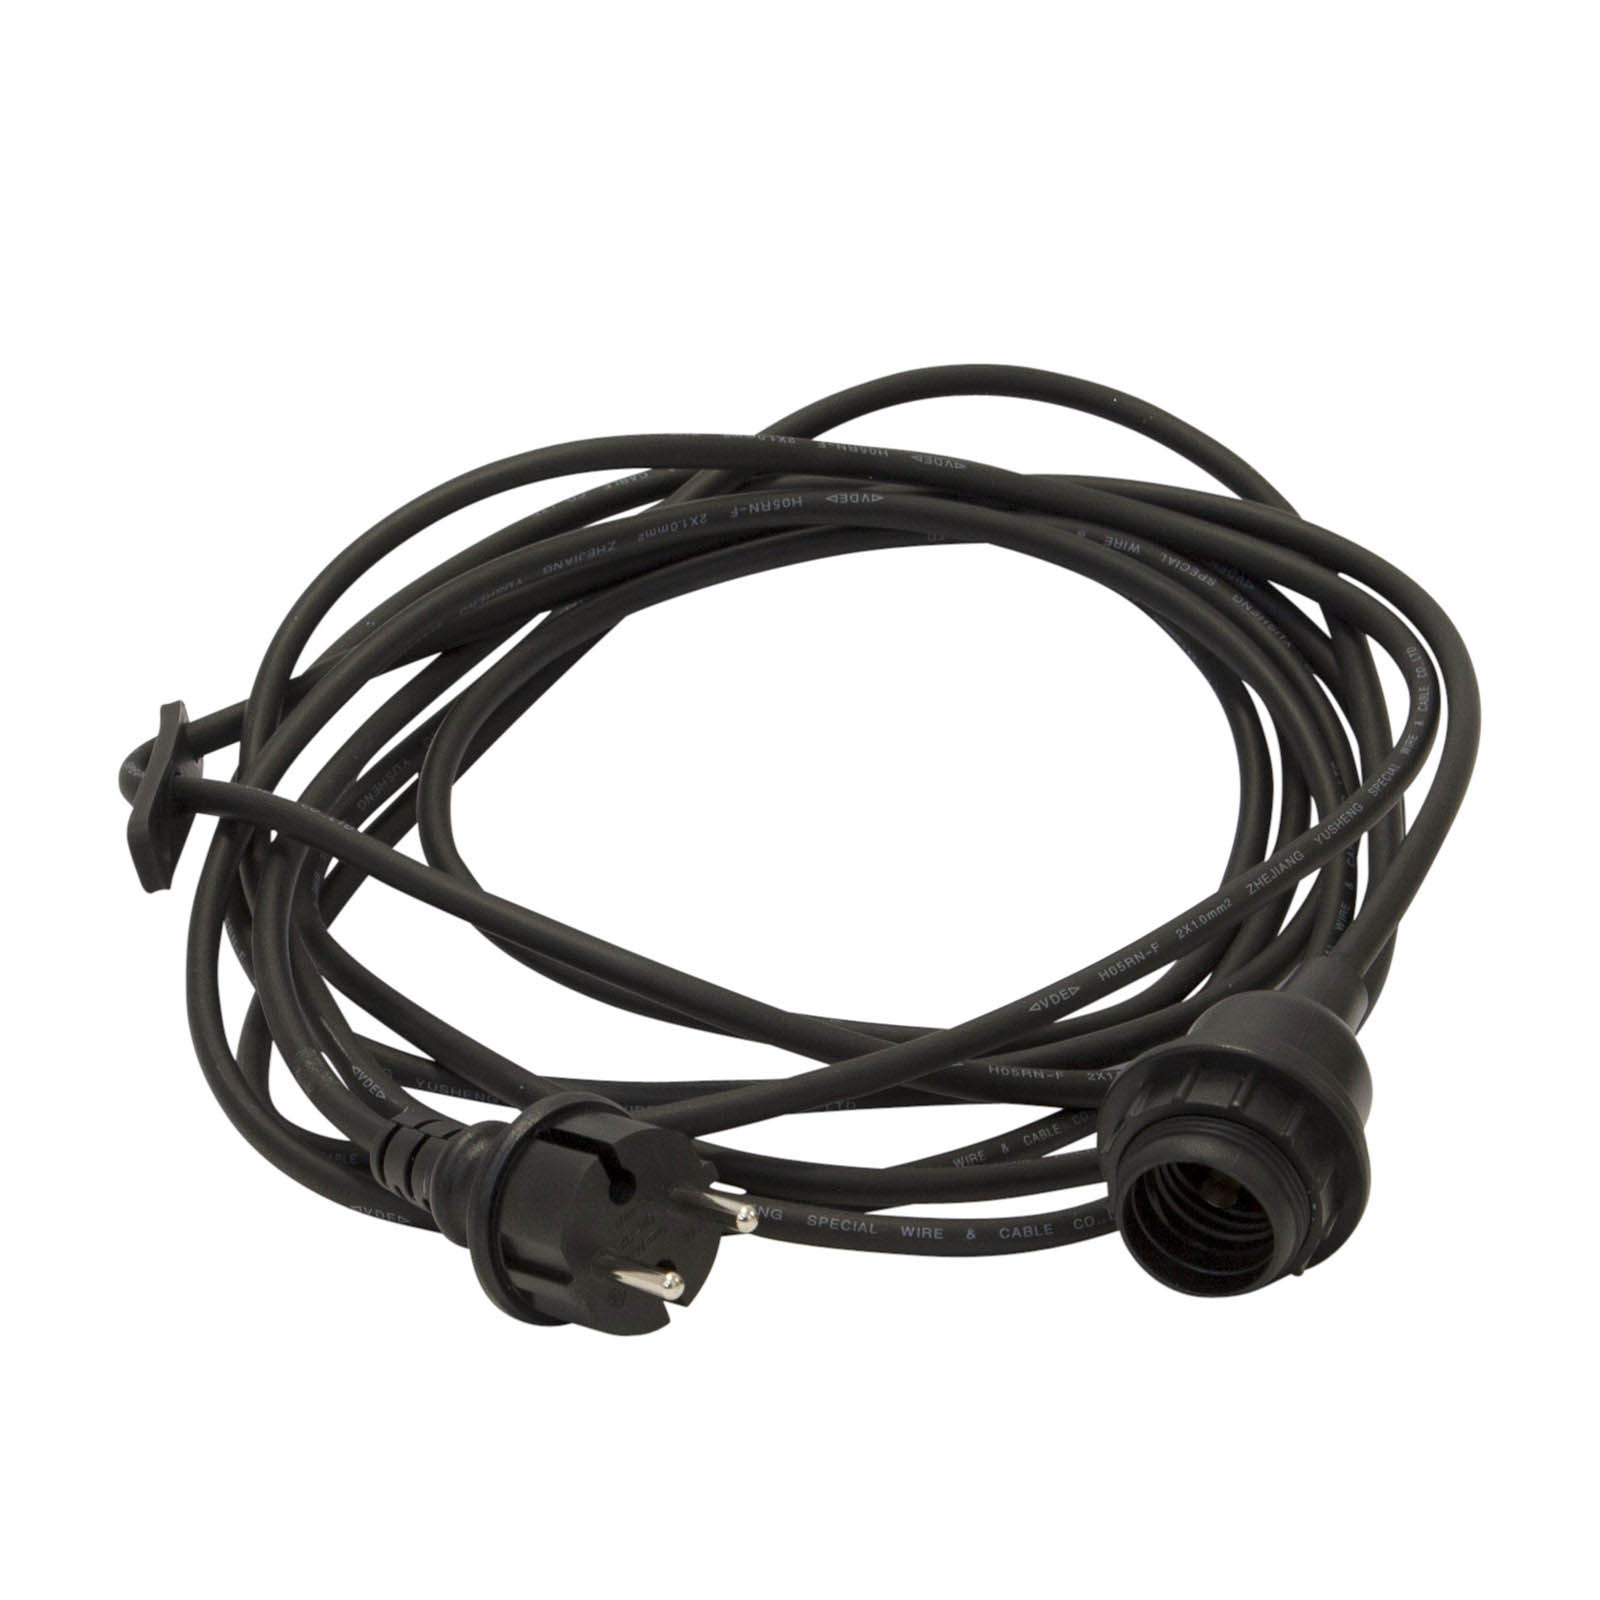 E27-fatning med kabel Ute, 5 m, svart